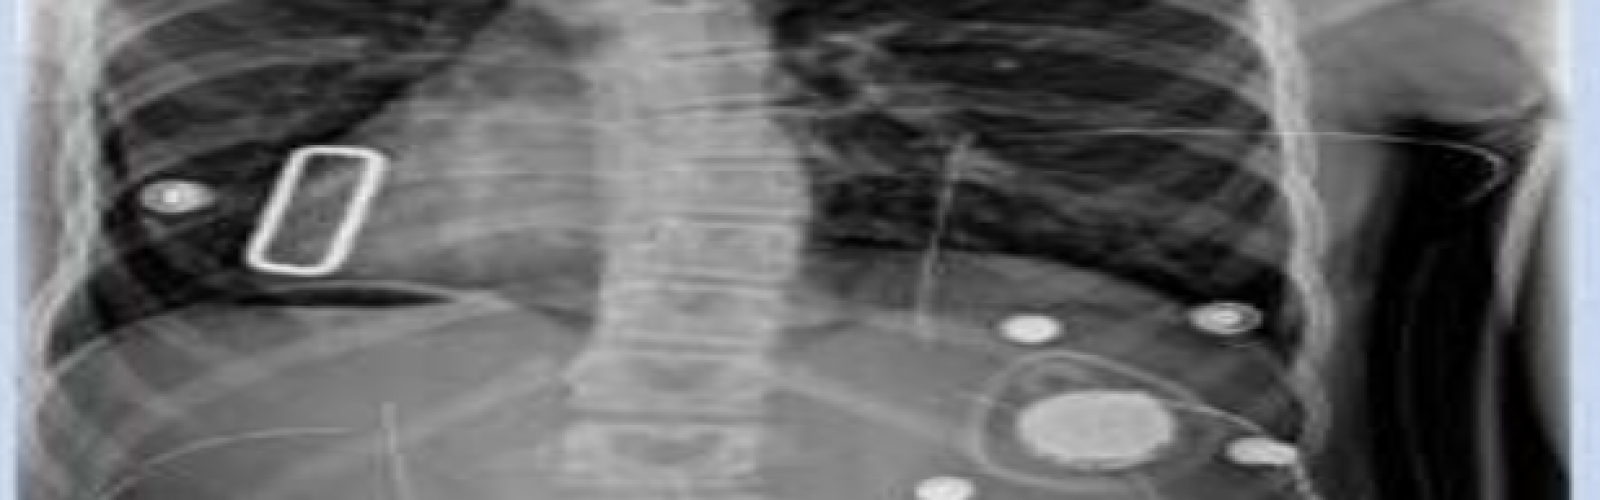 radiografía corsé tratamiento columna vertebral